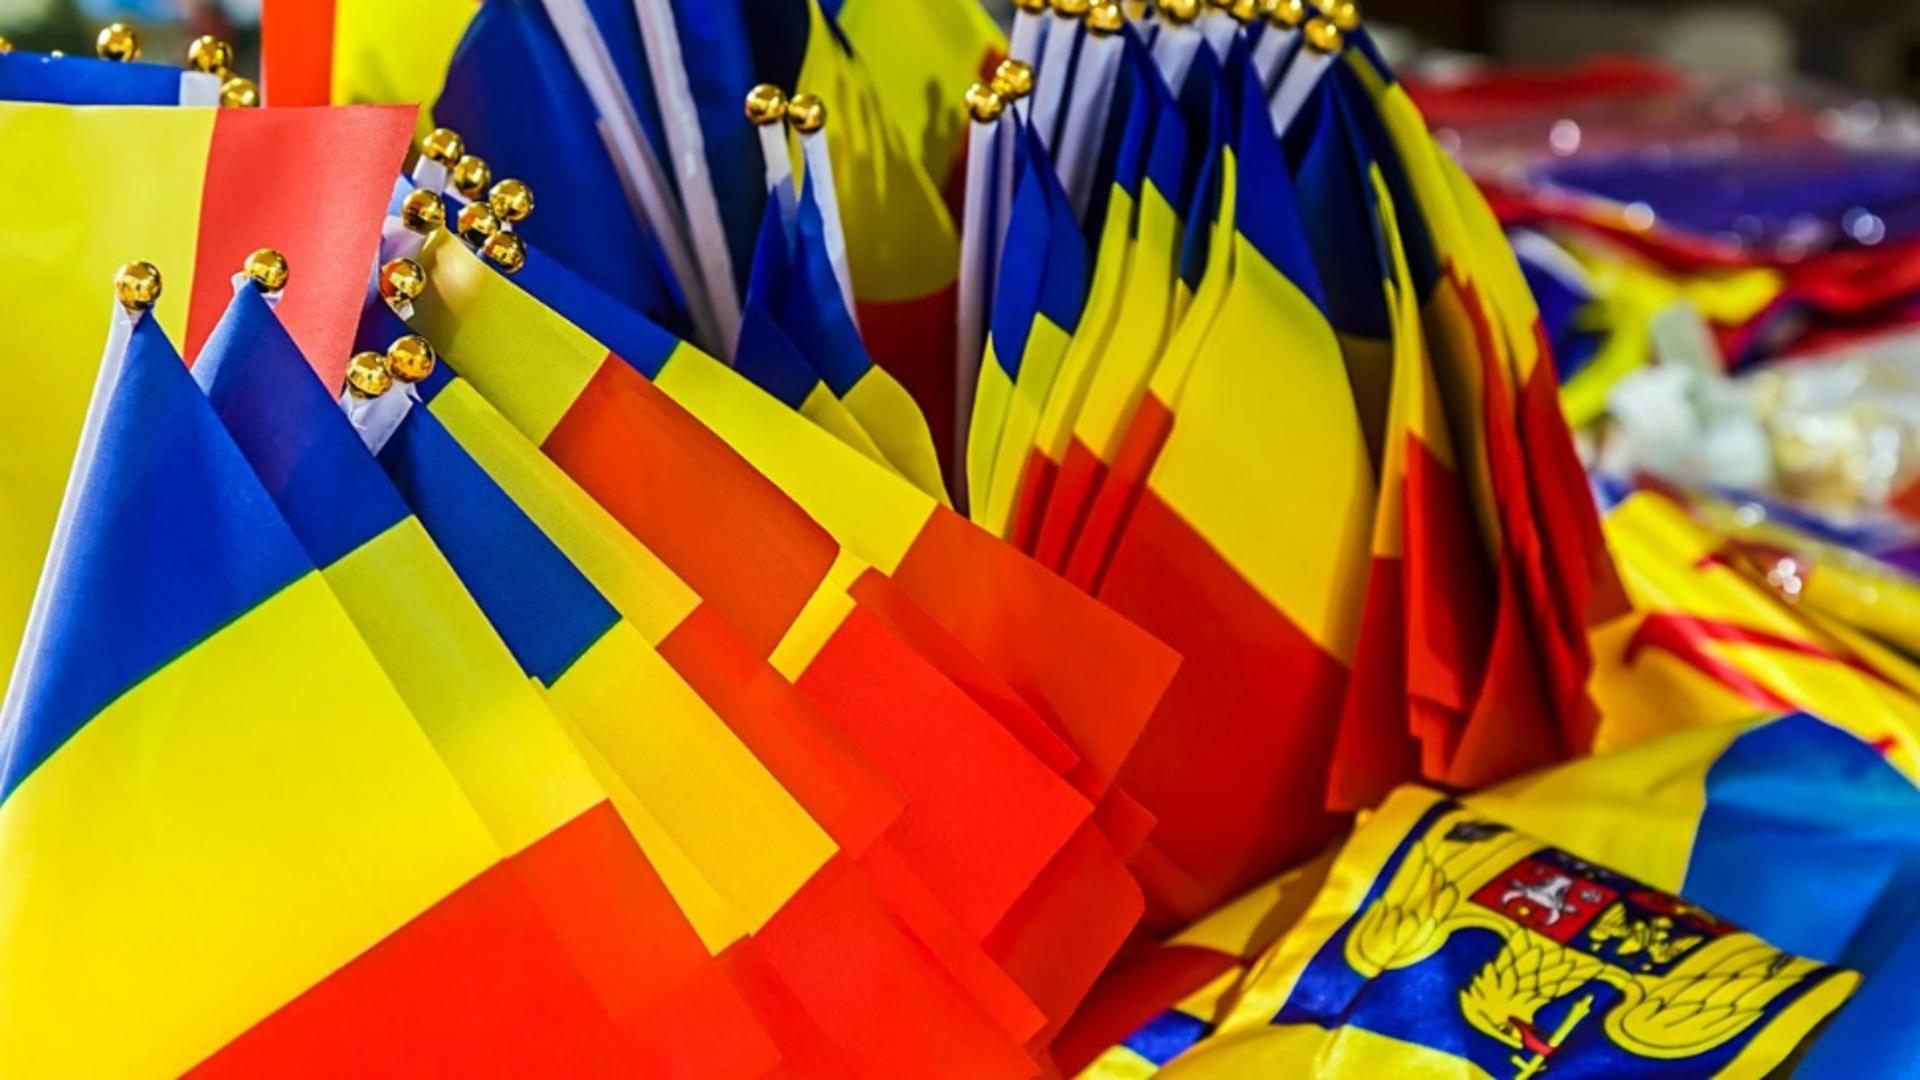 Amenzi usturătoare pentru cei care adaugă inscripţii şi simboluri ilegale pe drapelul României. Senatul a decis